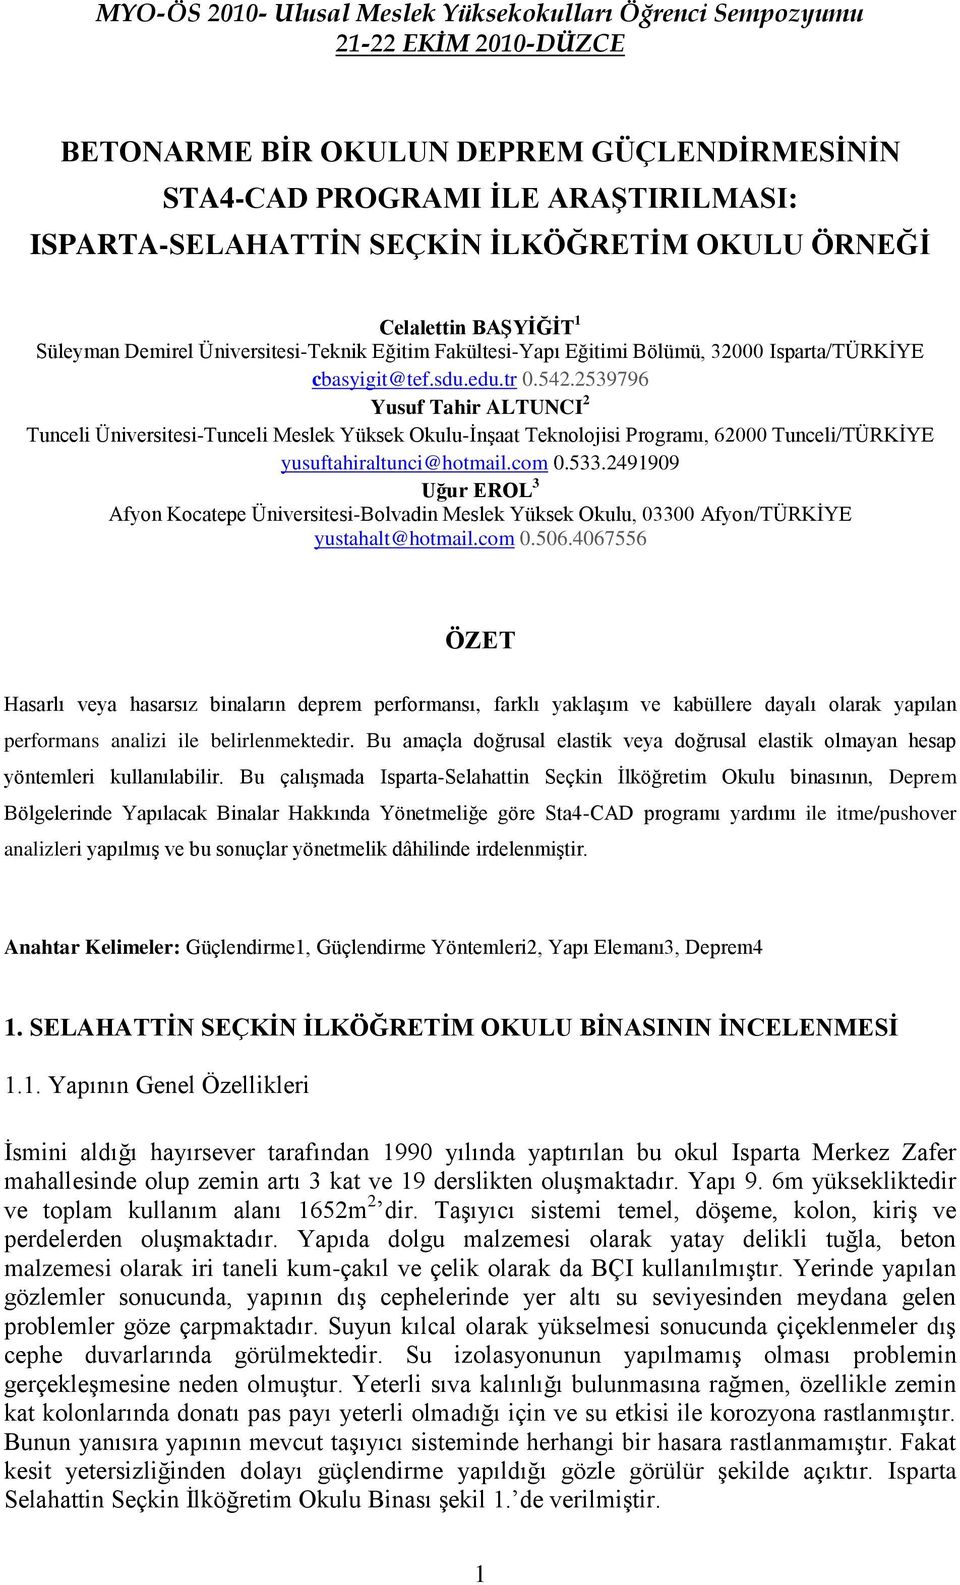 2539796 Yusuf Tahir ALTUNCI 2 Tunceli Üniversitesi-Tunceli Meslek Yüksek Okulu-İnşaat Teknolojisi Programı, 62000 Tunceli/TÜRKİYE yusuftahiraltunci@hotmail.com 0.533.